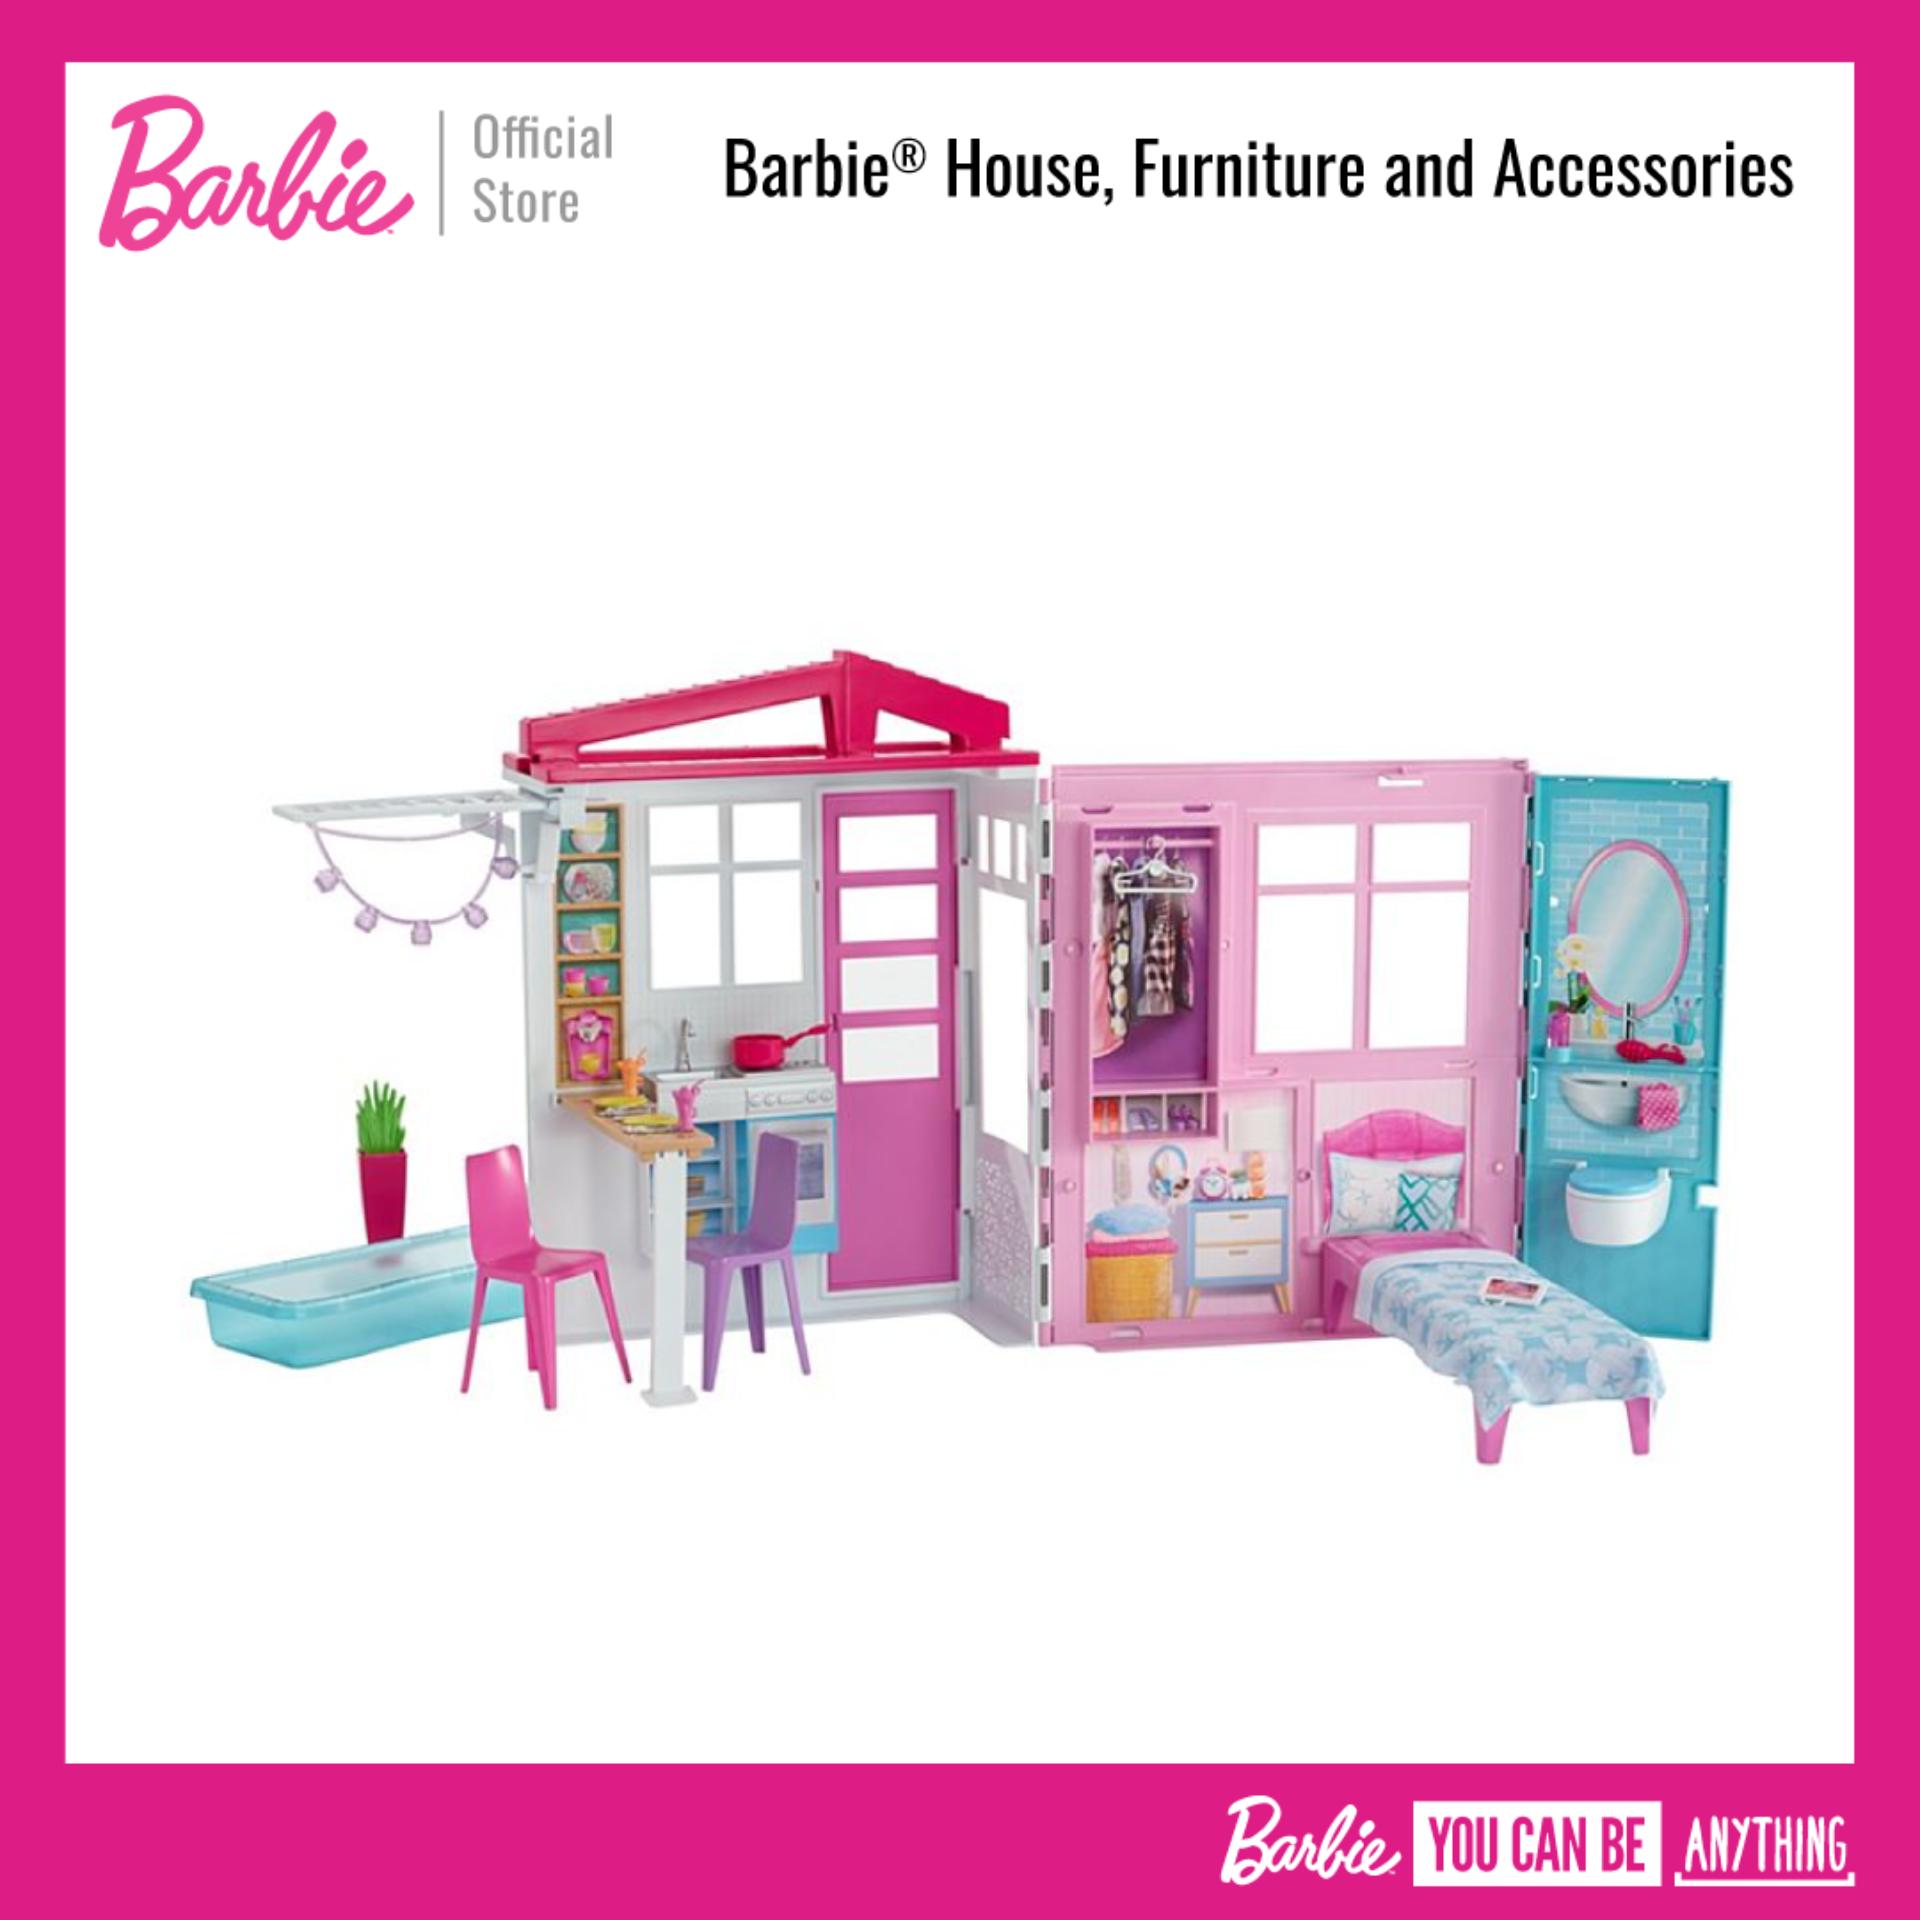 Barbie® House, Furniture and Accessories บาร์บี้ บ้านตุ๊กตา พร้อมเฟอร์นิเจอร์ ของเล่น ของเล่นเด็ก